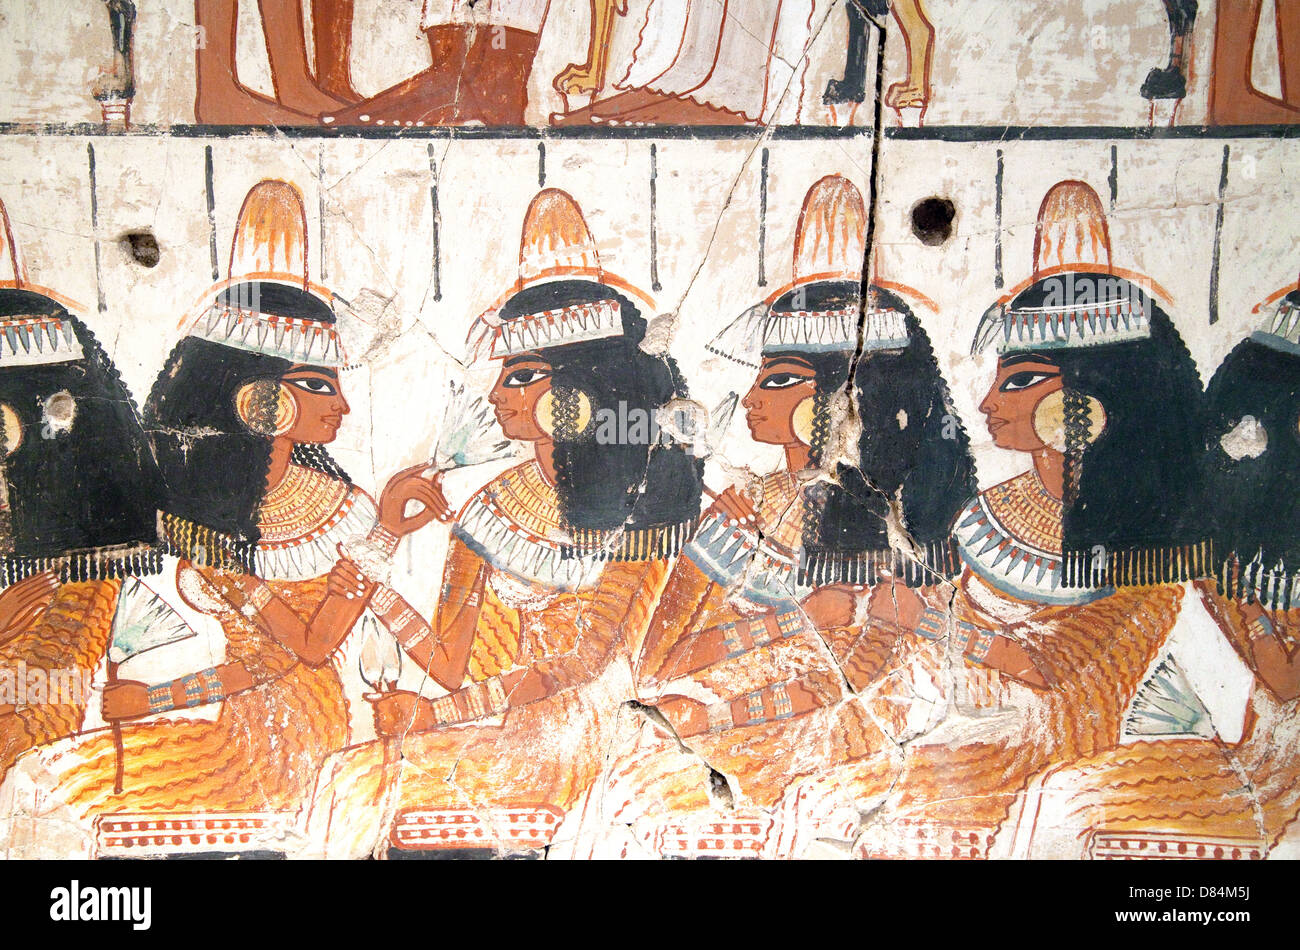 Dettaglio di antiche pitture murali egiziane di donne nell'antico Egitto Foto Stock